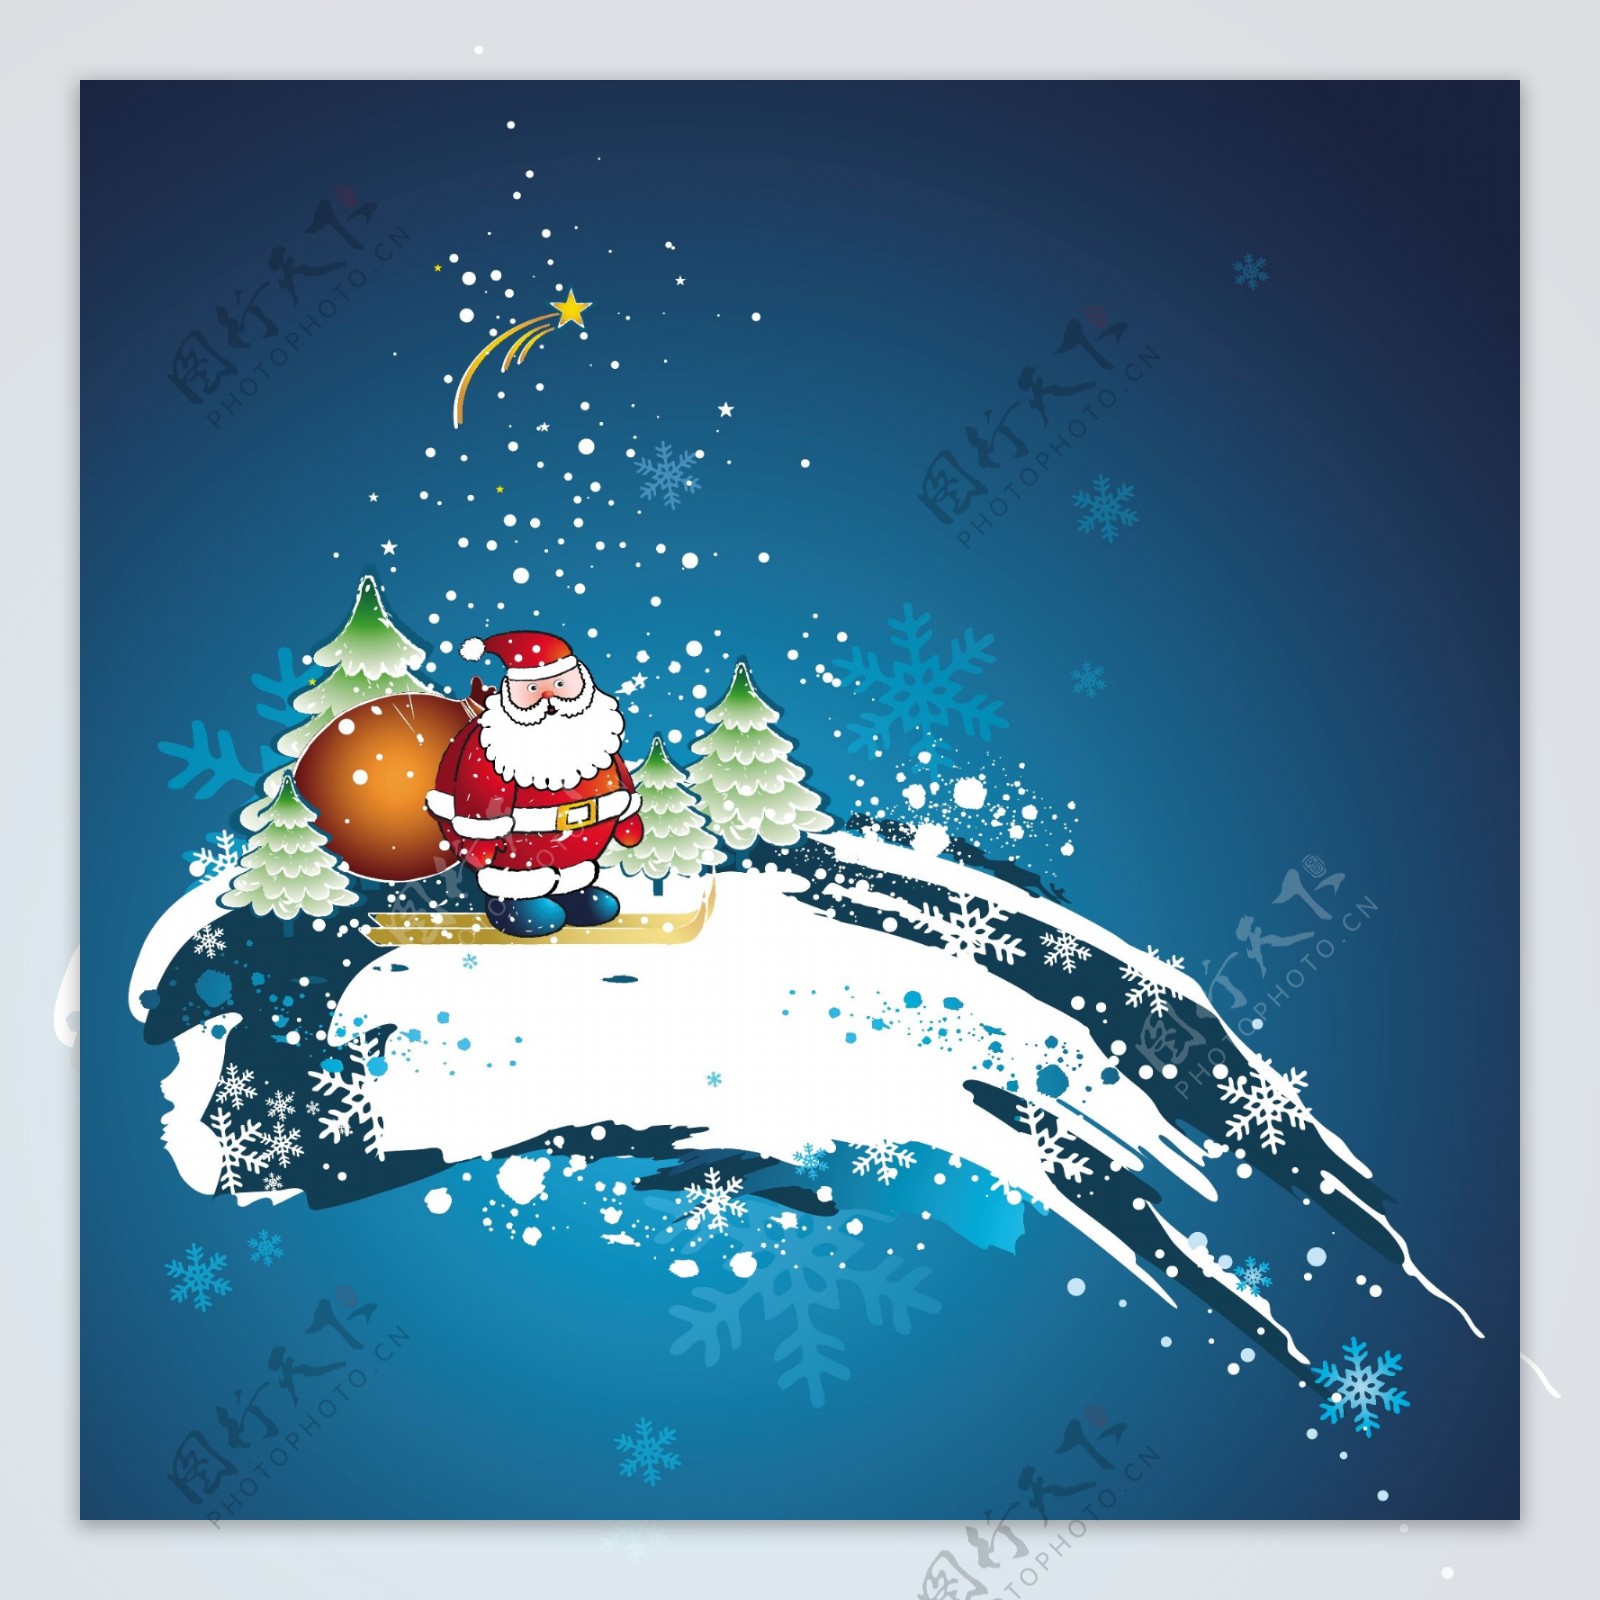 圣诞节、圣诞老人、雪地、滑雪 - 免费可商用图片 - CC0素材网